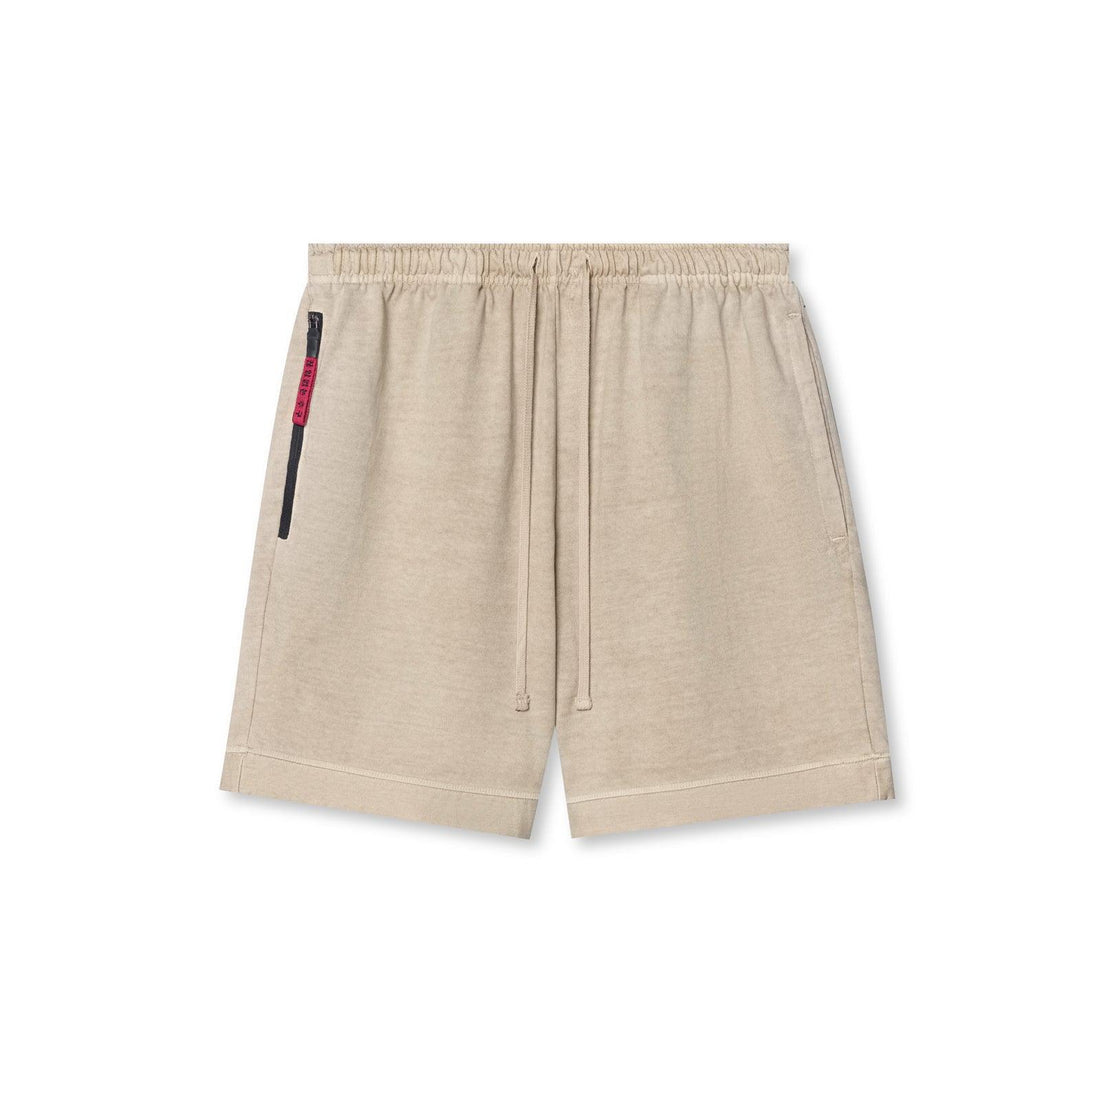 Men's Cotton Blend Fitness Shorts - TheApFit